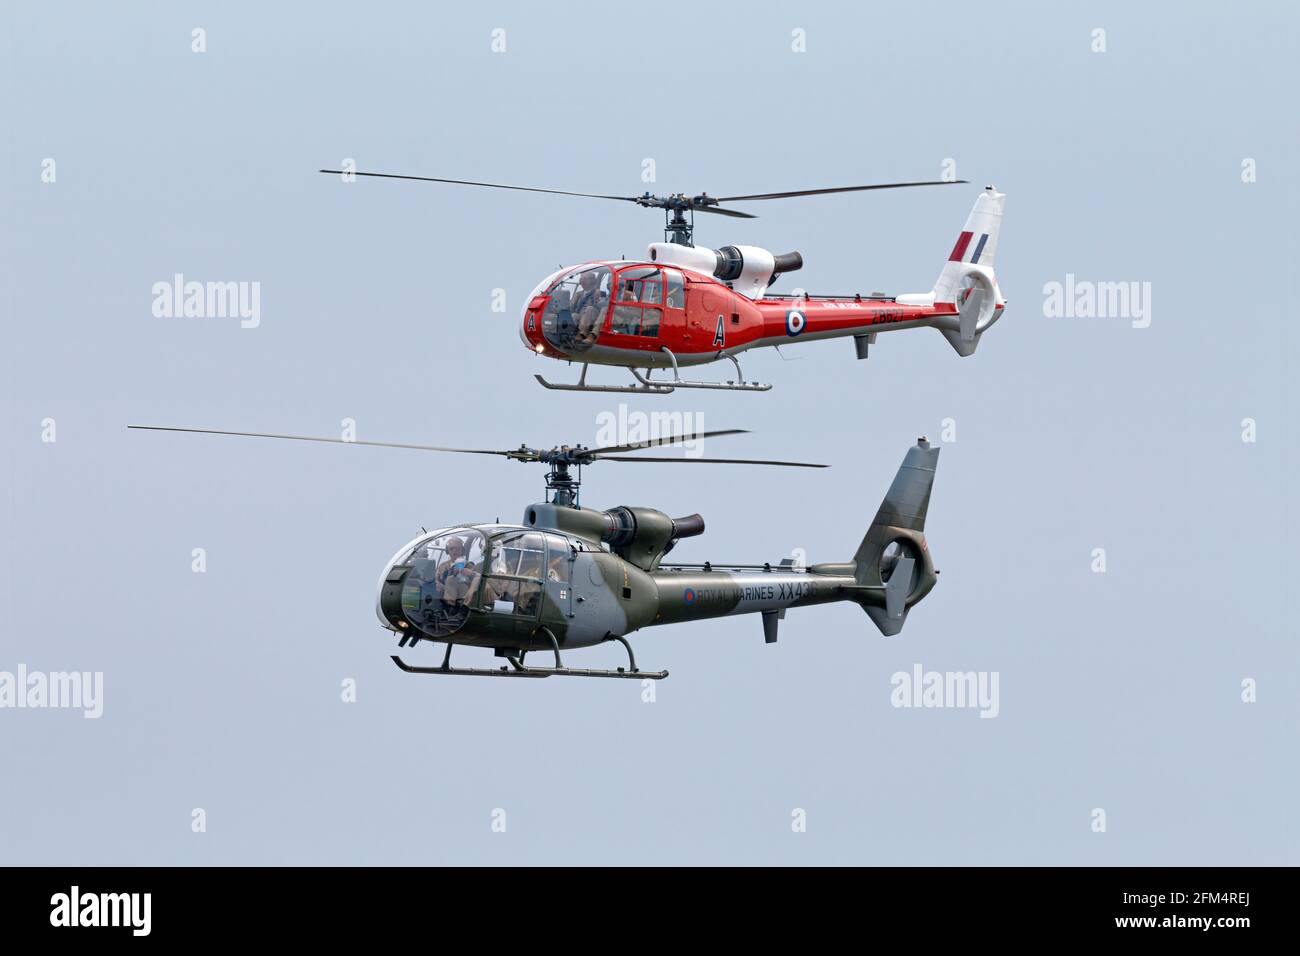 2 Helicóptero Westland Aerospatiale Gazelle de los Royal Marines Británicos Y RAF Foto de stock